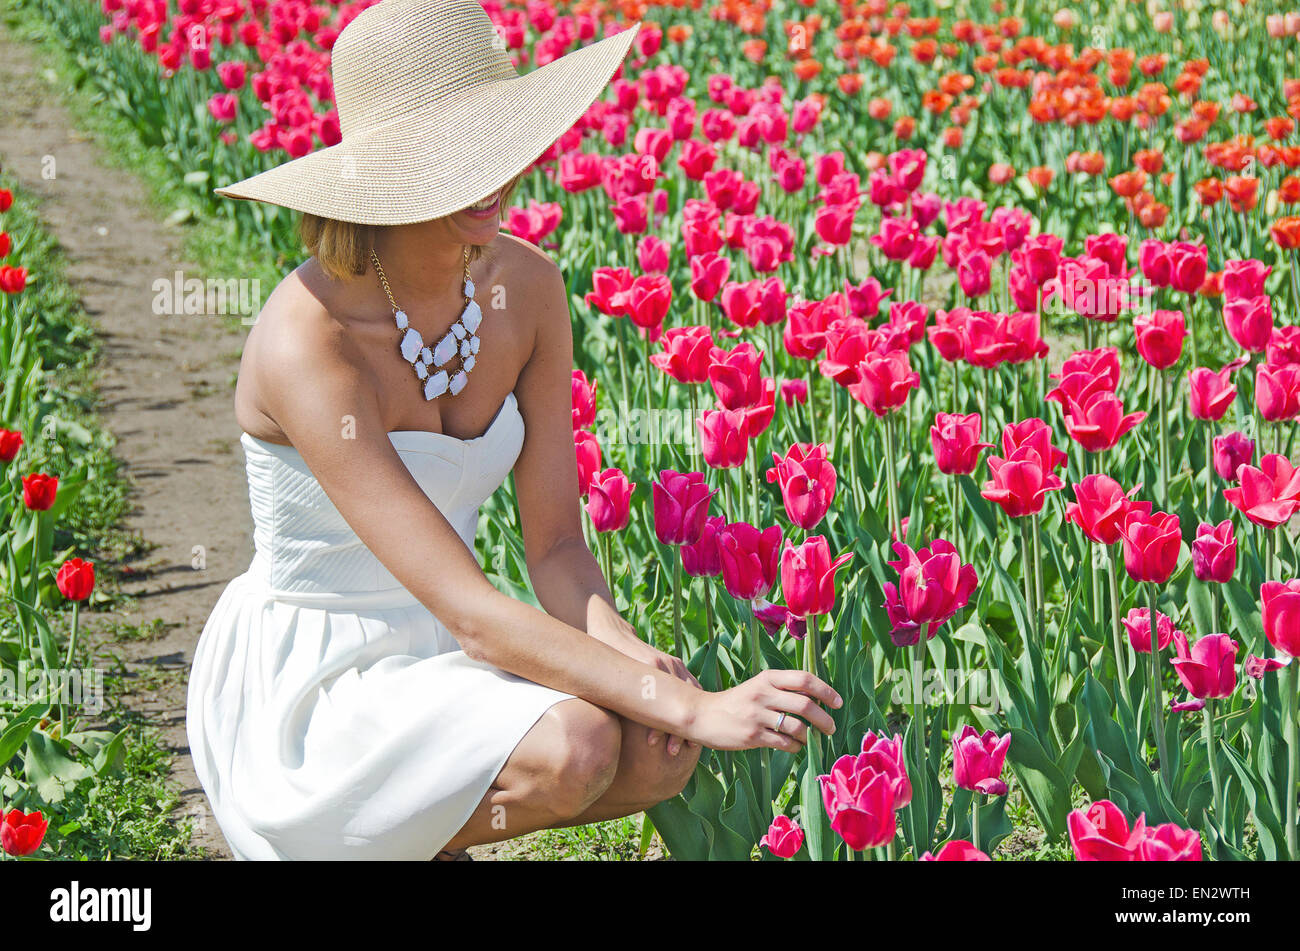 Jolie femme avec fashion hat et white bretelles robe d'été dans un jardin de tulipes au printemps. Banque D'Images